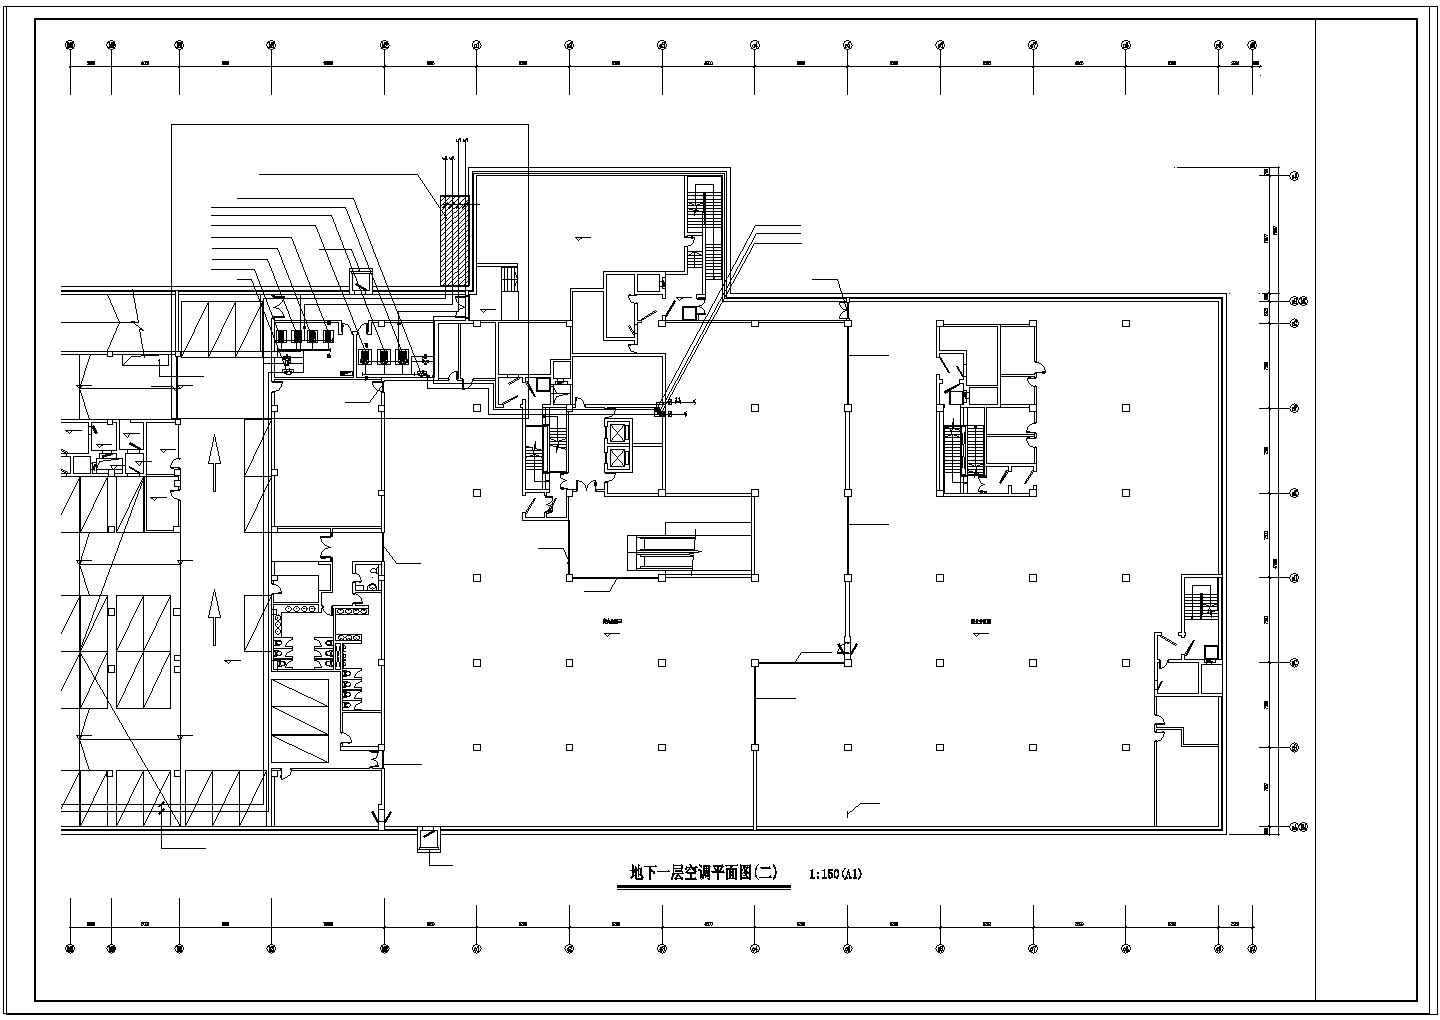 【上海】某酒店空调系统设计施工图纸